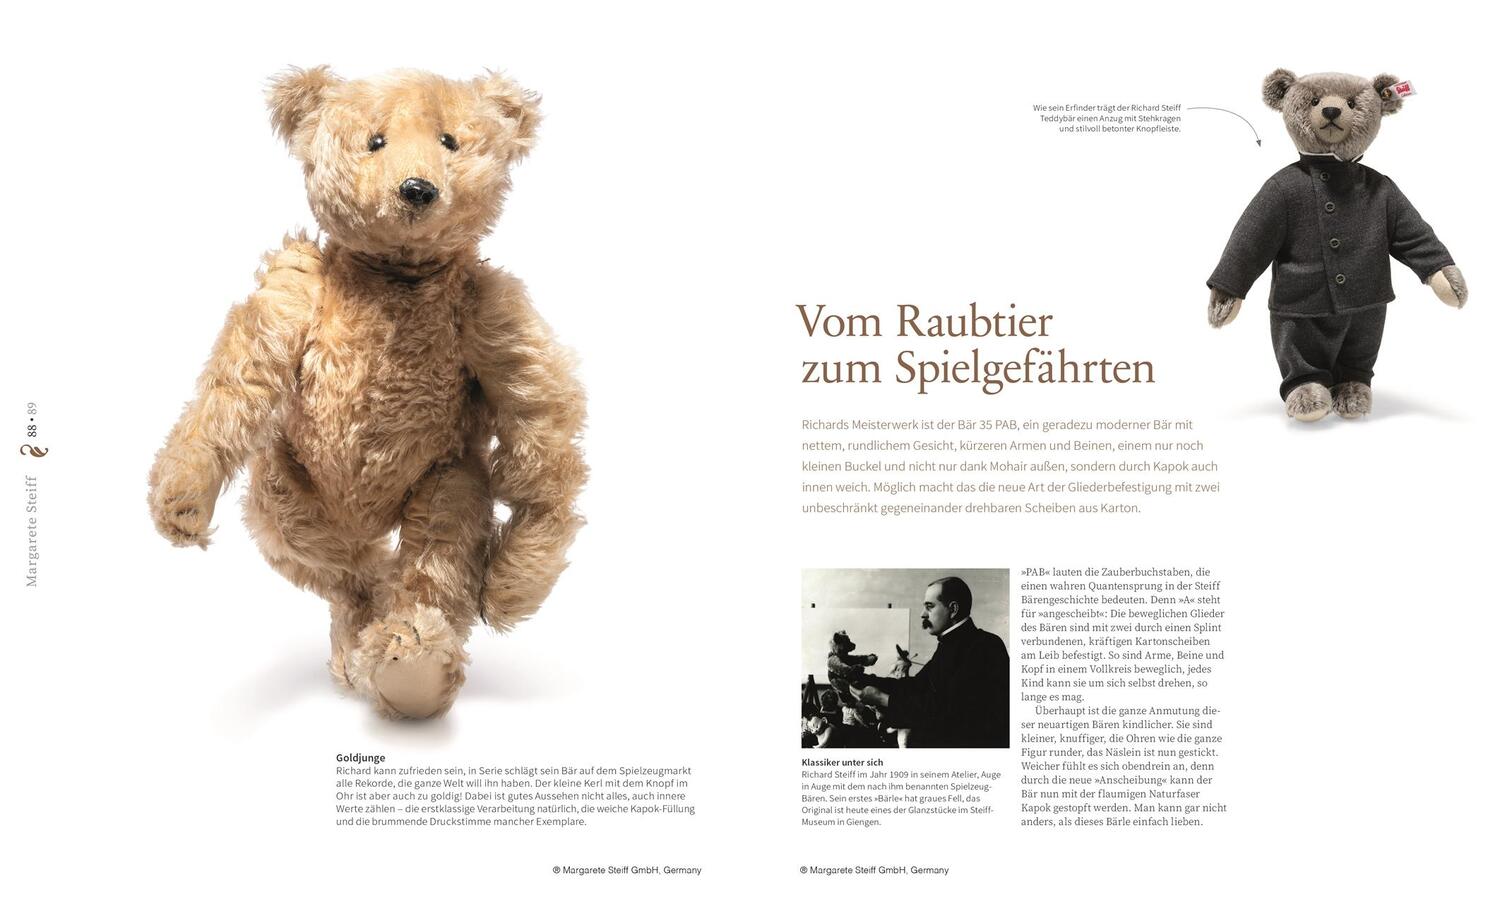 Bild: 9783831043477 | Das Steiff Teddybären Buch | Elisabeth Schnurrer | Buch | 200 S.